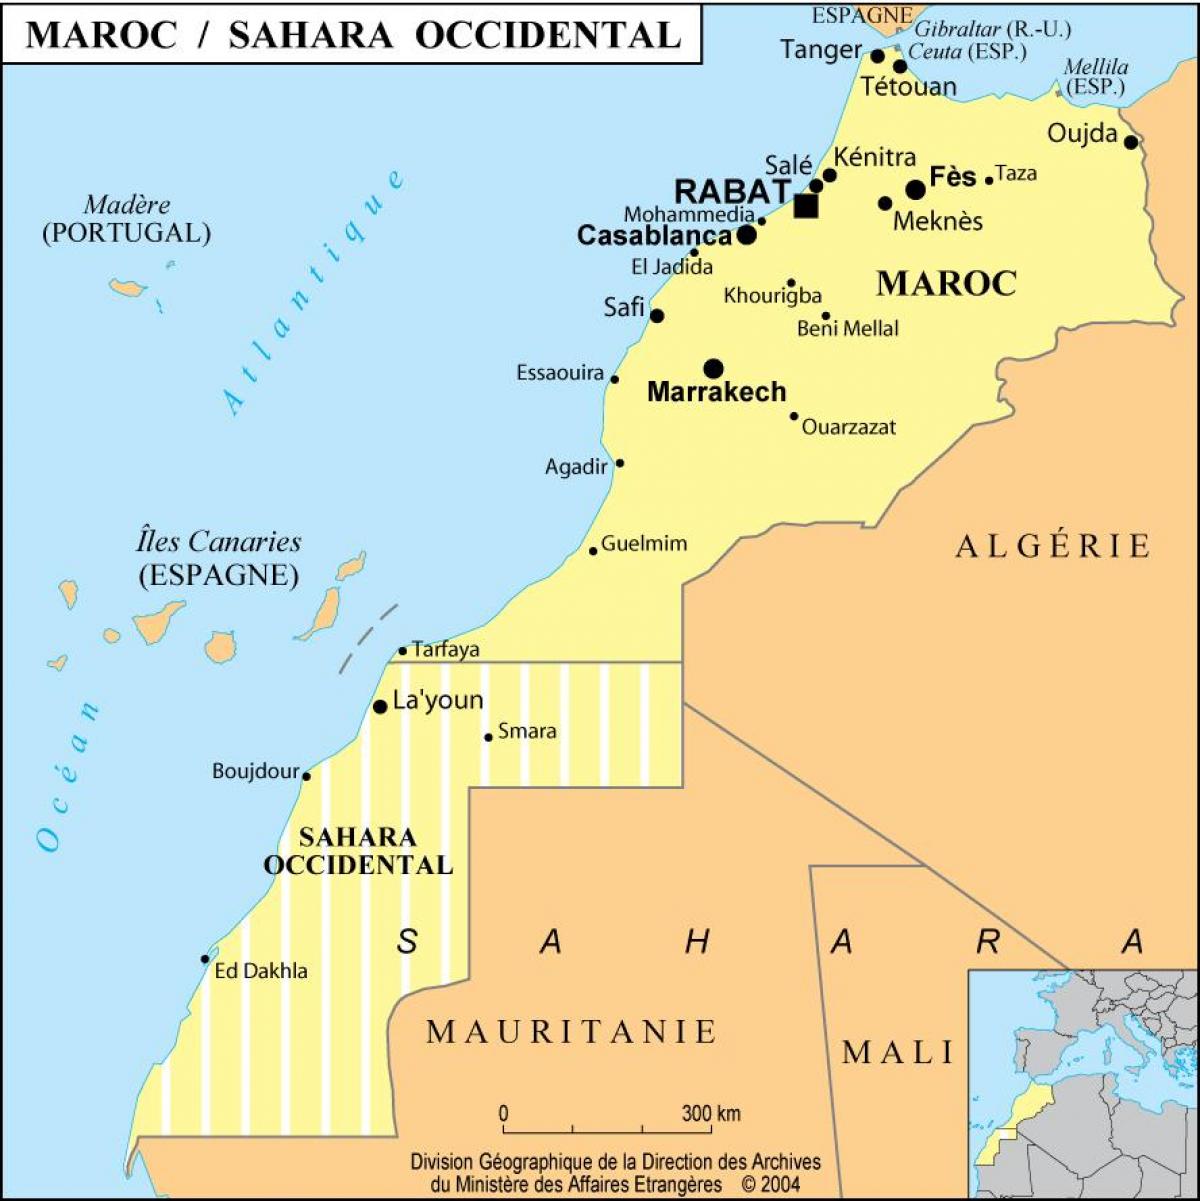 Mappa del Marocco con le principali città